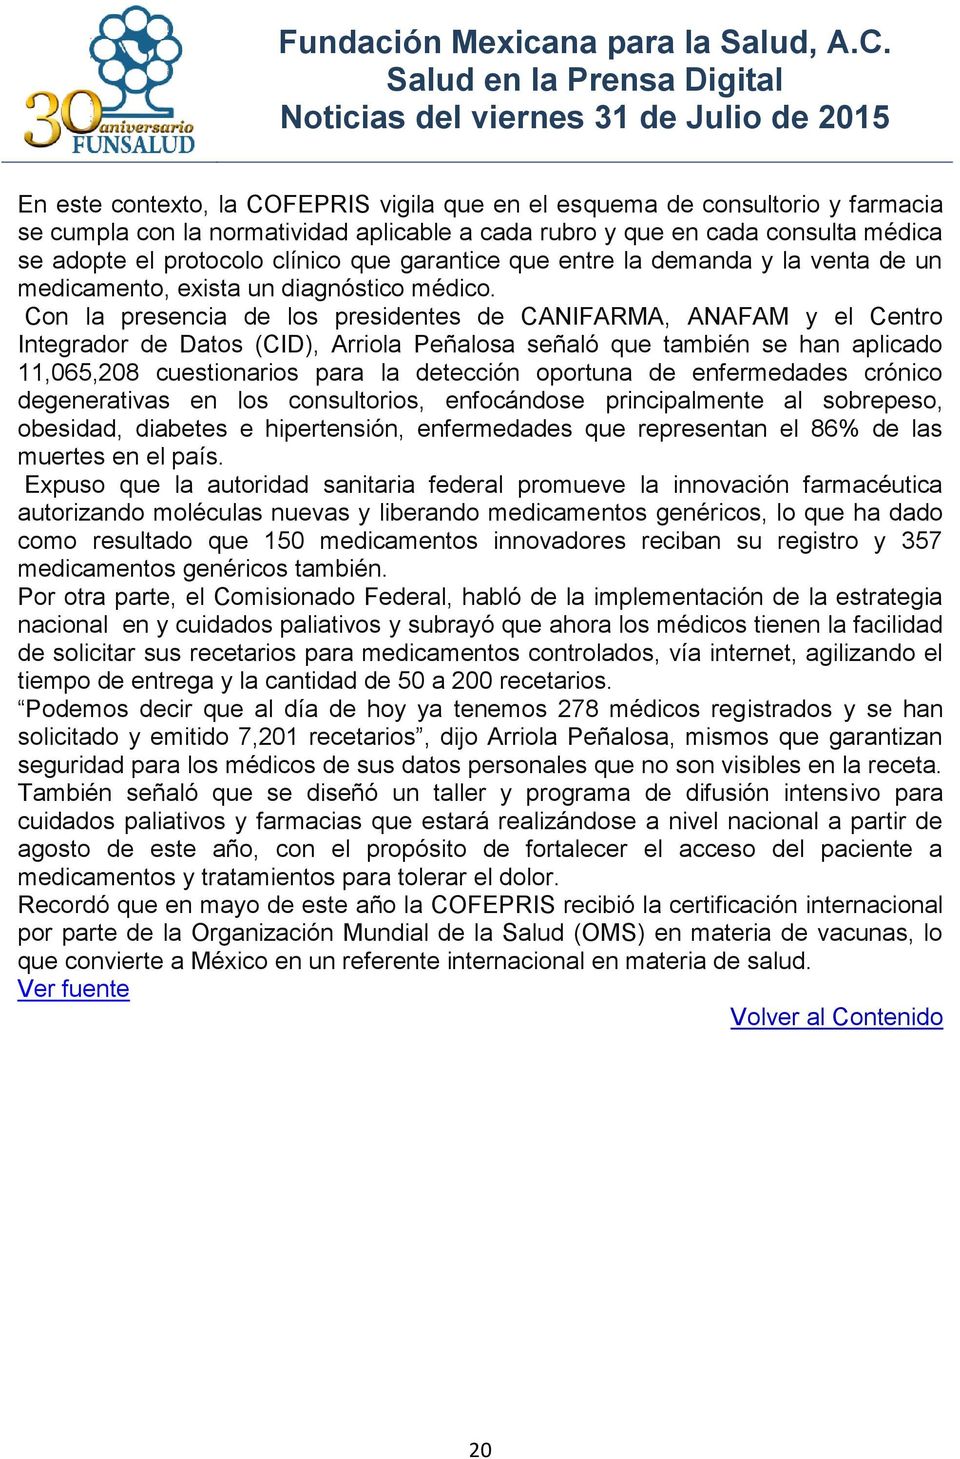 Con la presencia de los presidentes de CANIFARMA, ANAFAM y el Centro Integrador de Datos (CID), Arriola Peñalosa señaló que también se han aplicado 11,065,208 cuestionarios para la detección oportuna